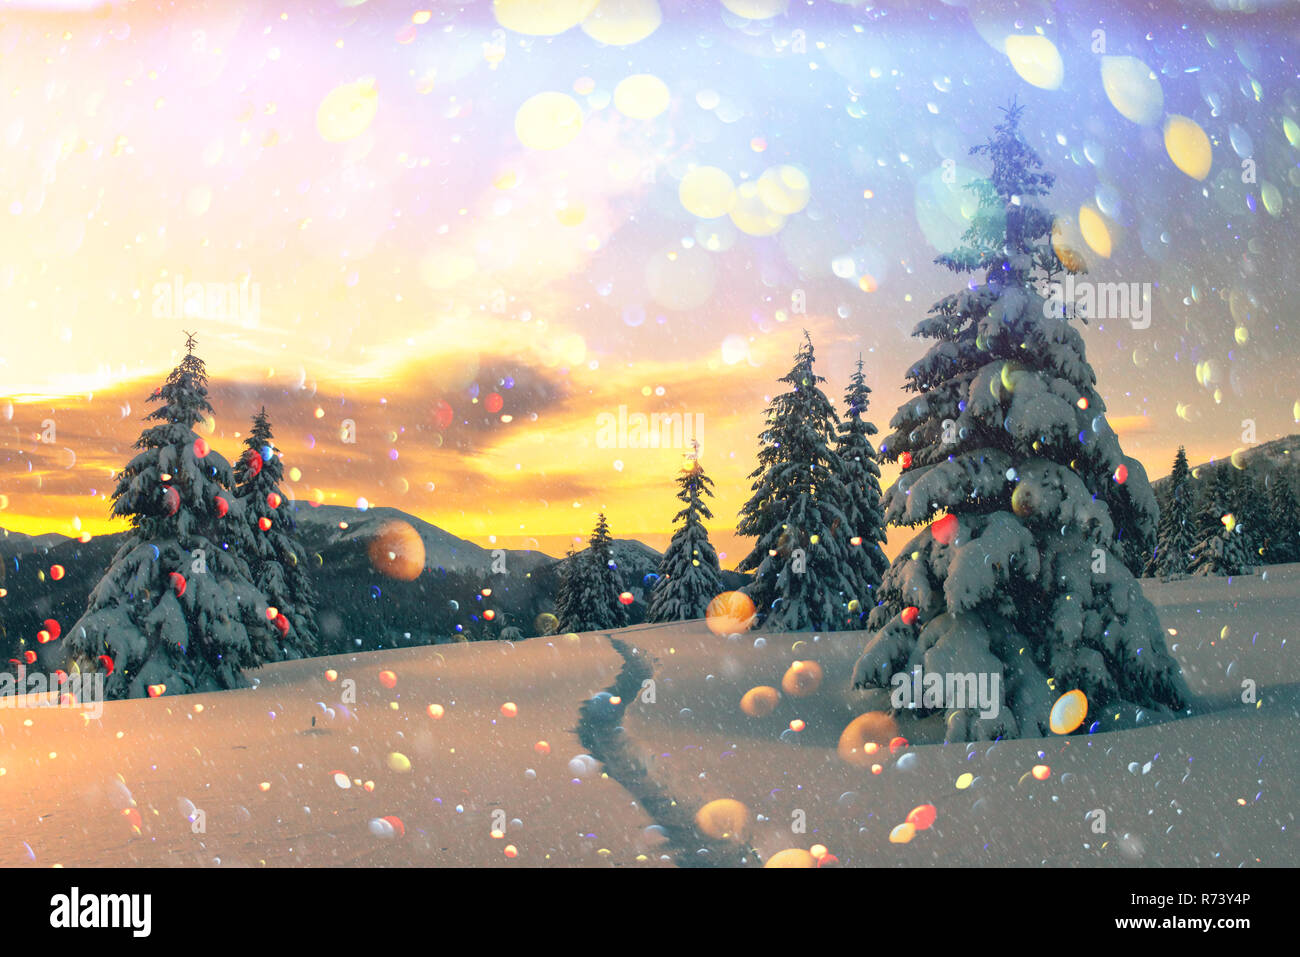 Arancione fantastico paesaggio invernale in montagna innevata incandescente dalla luce del sole. Drammatica scena invernale con alberi innevati. DOF bokeh luce effetto di post-elaborazione. Vacanze di Natale collage Foto Stock